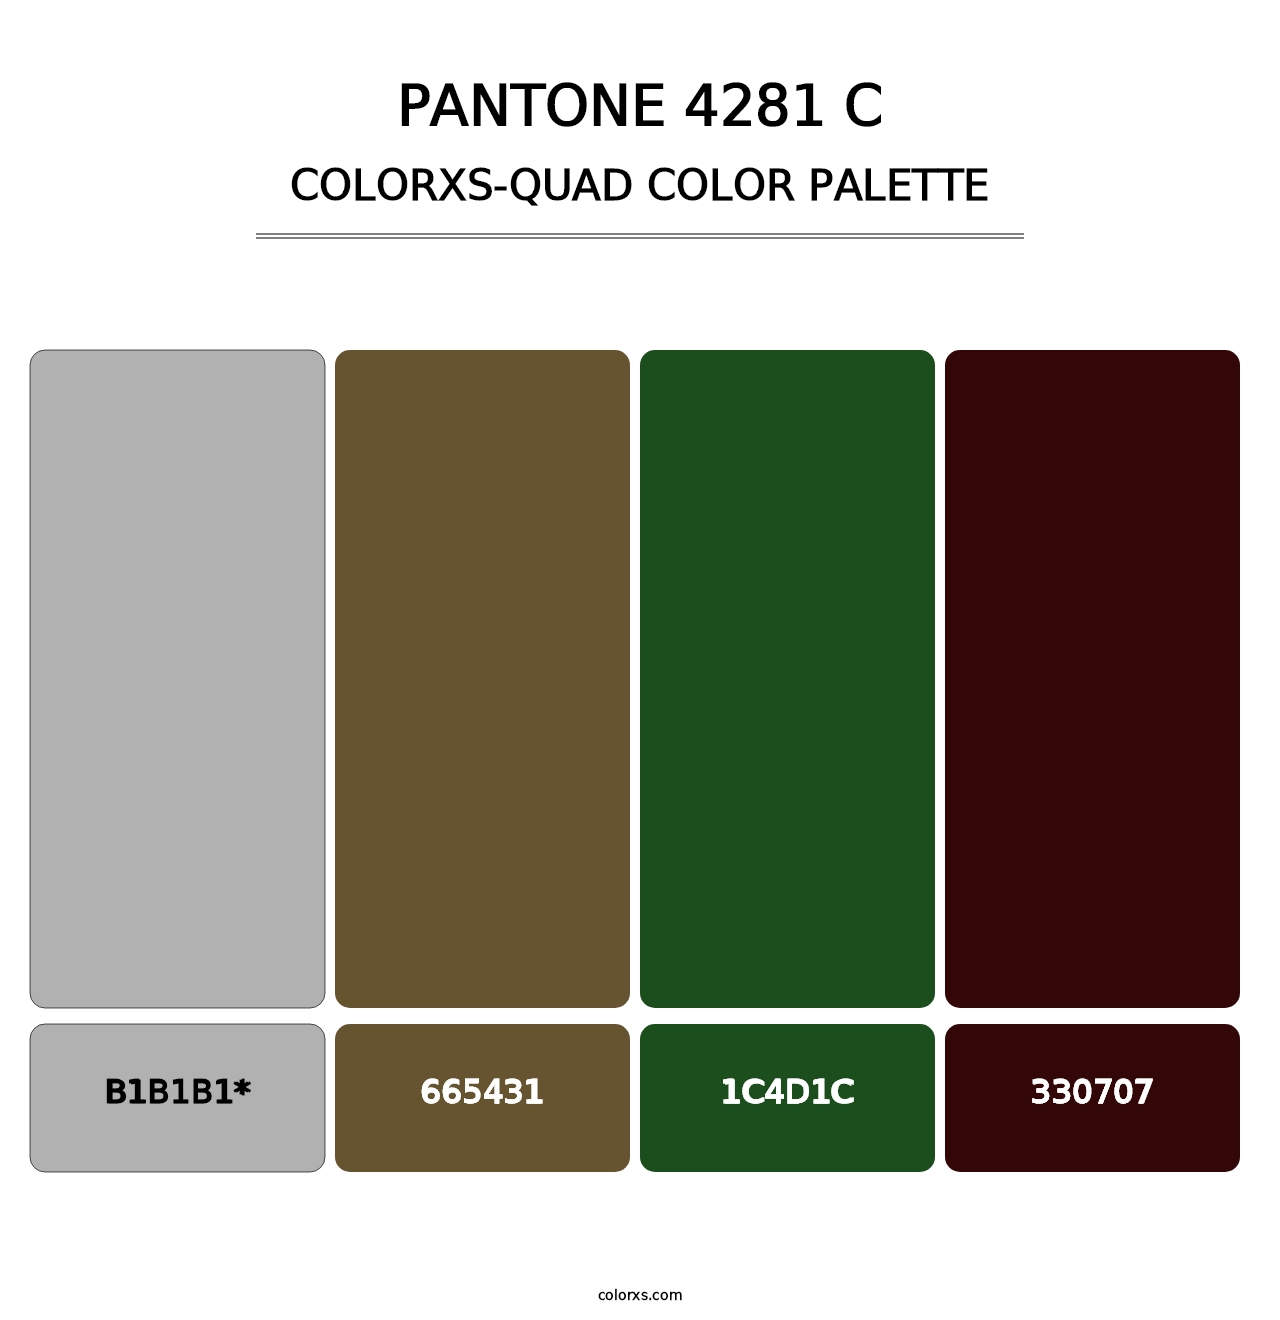 PANTONE 4281 C - Colorxs Quad Palette